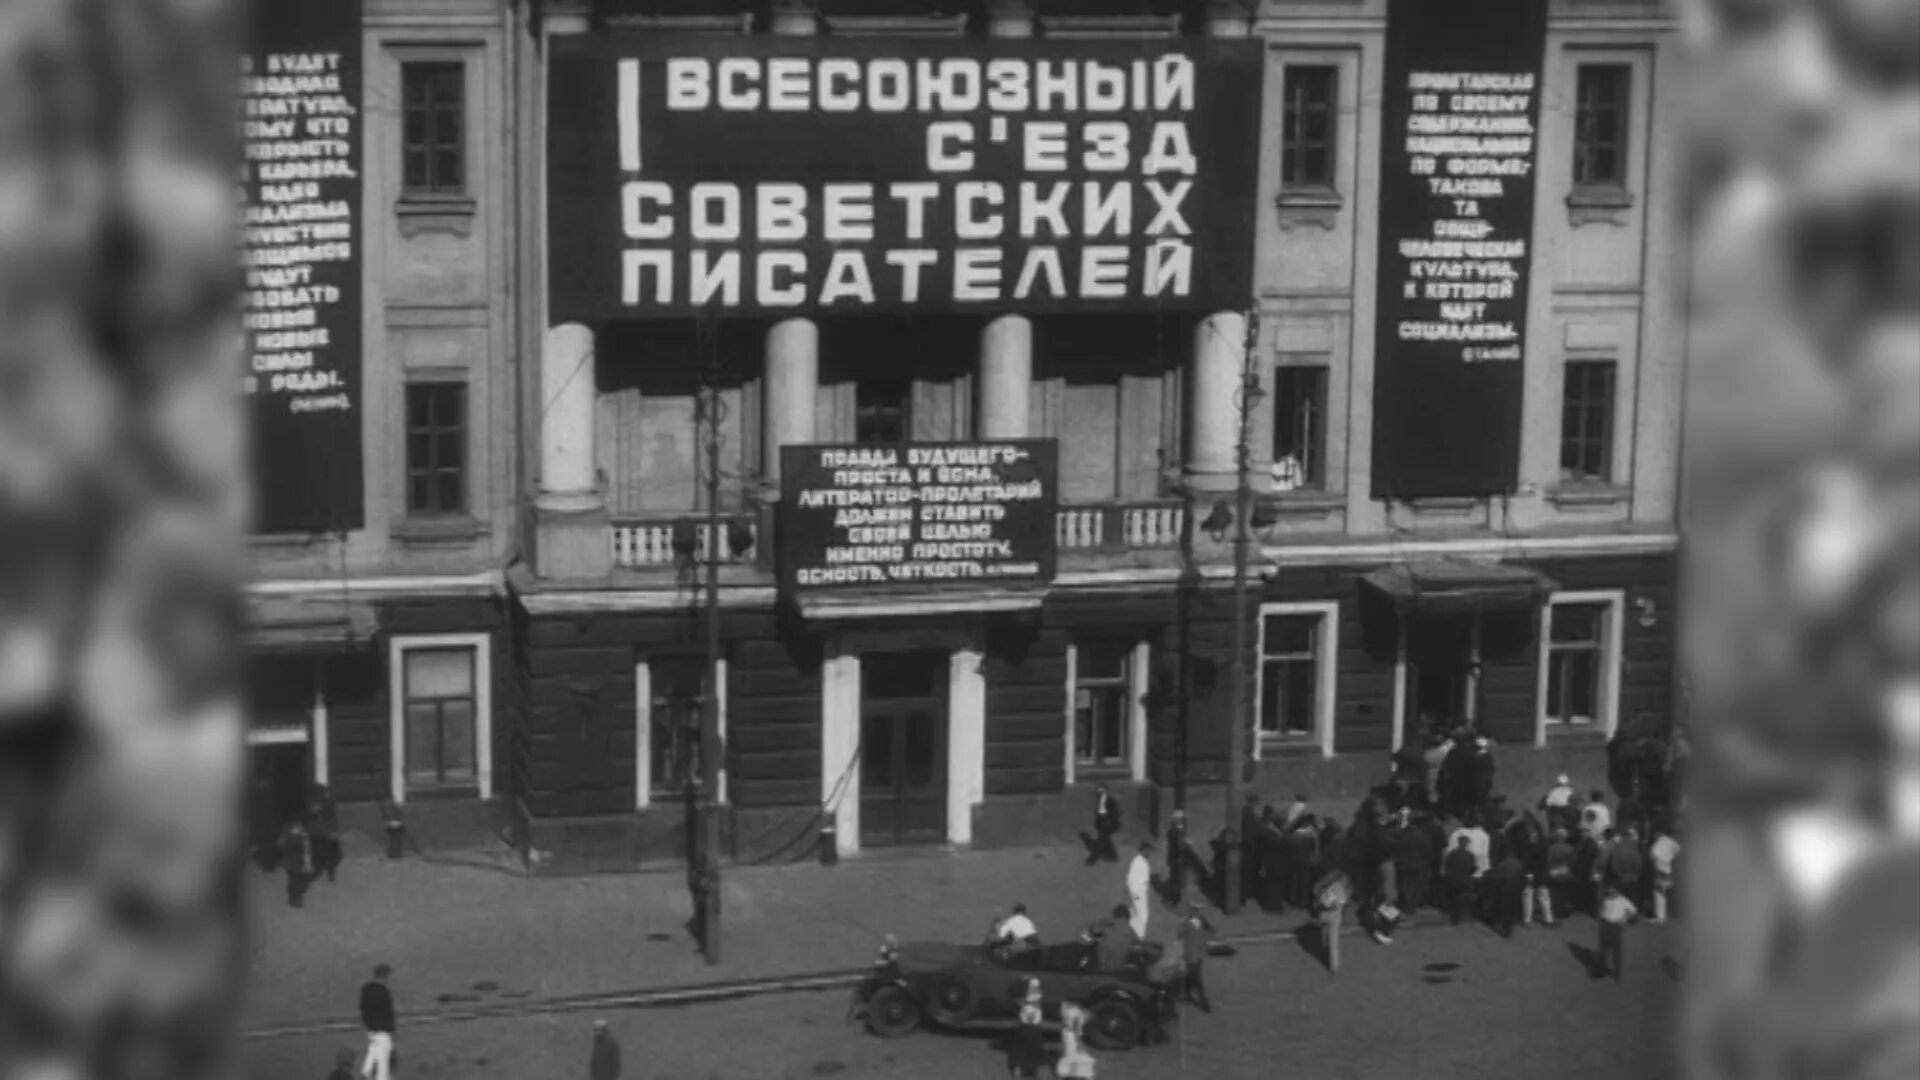 Всесоюзный съезд писателей 1934. I Всесоюзный съезд советских писателей. Первый съезд Союза писателей СССР 1934.